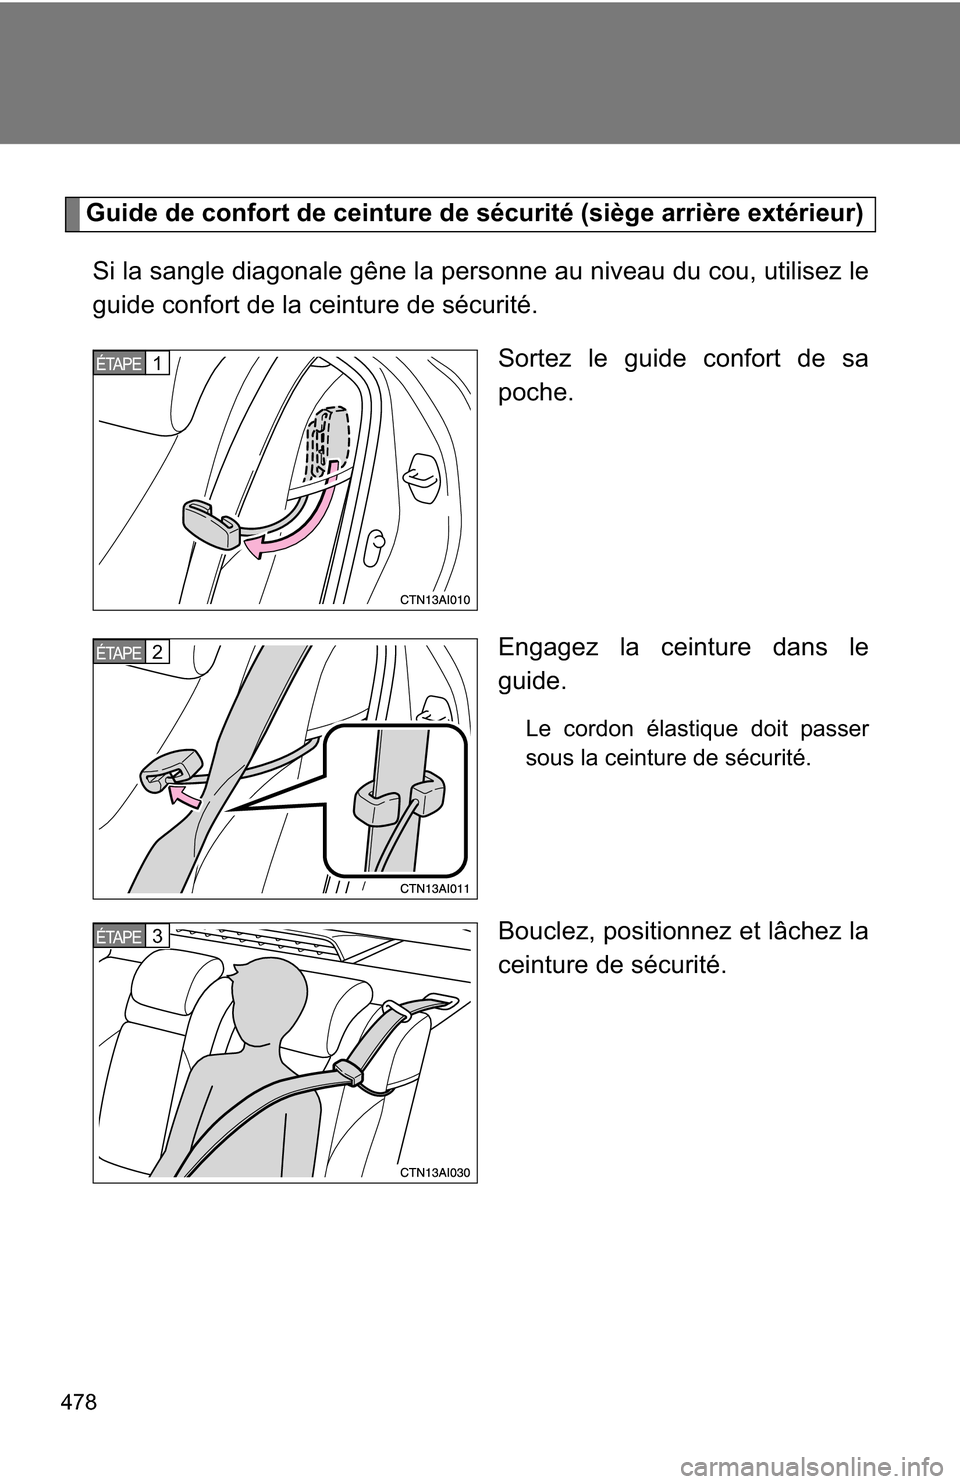 TOYOTA CAMRY HYBRID 2010 XV40 / 8.G Owners Manual 478
Guide de confort de ceinture de sécurité (siège arrière extérieur)Si la sangle diagonale gêne la personne au niveau du cou, utilisez le
guide confort de la ceinture de sécurité. Sortez le 